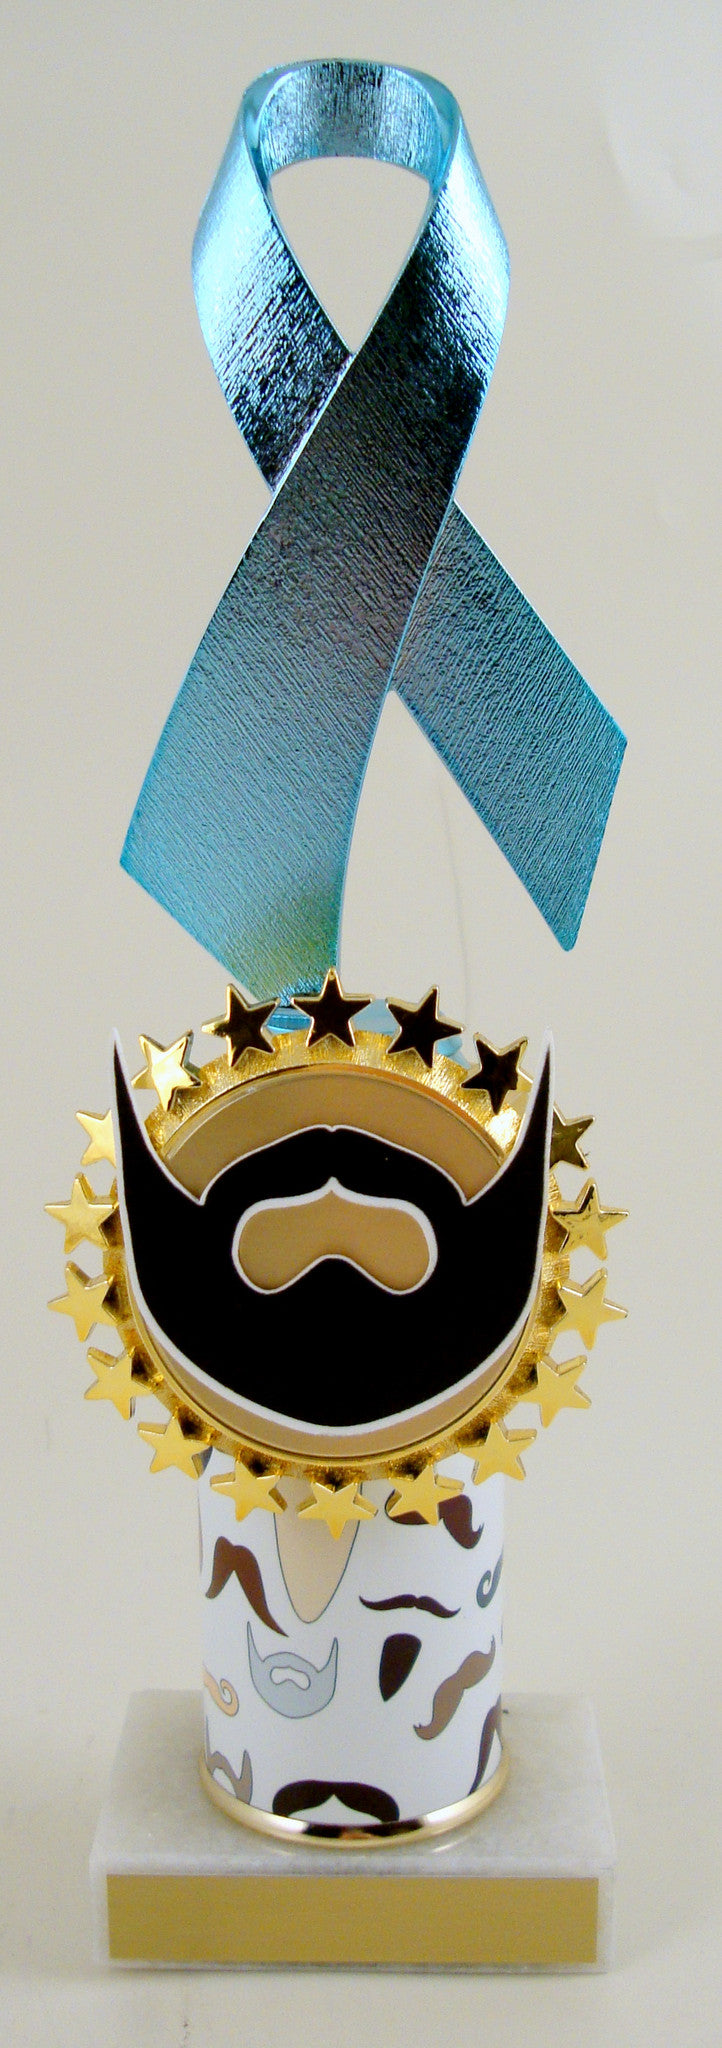 Beard Awareness Ribbon Trophy-Trophy-Schoppy&